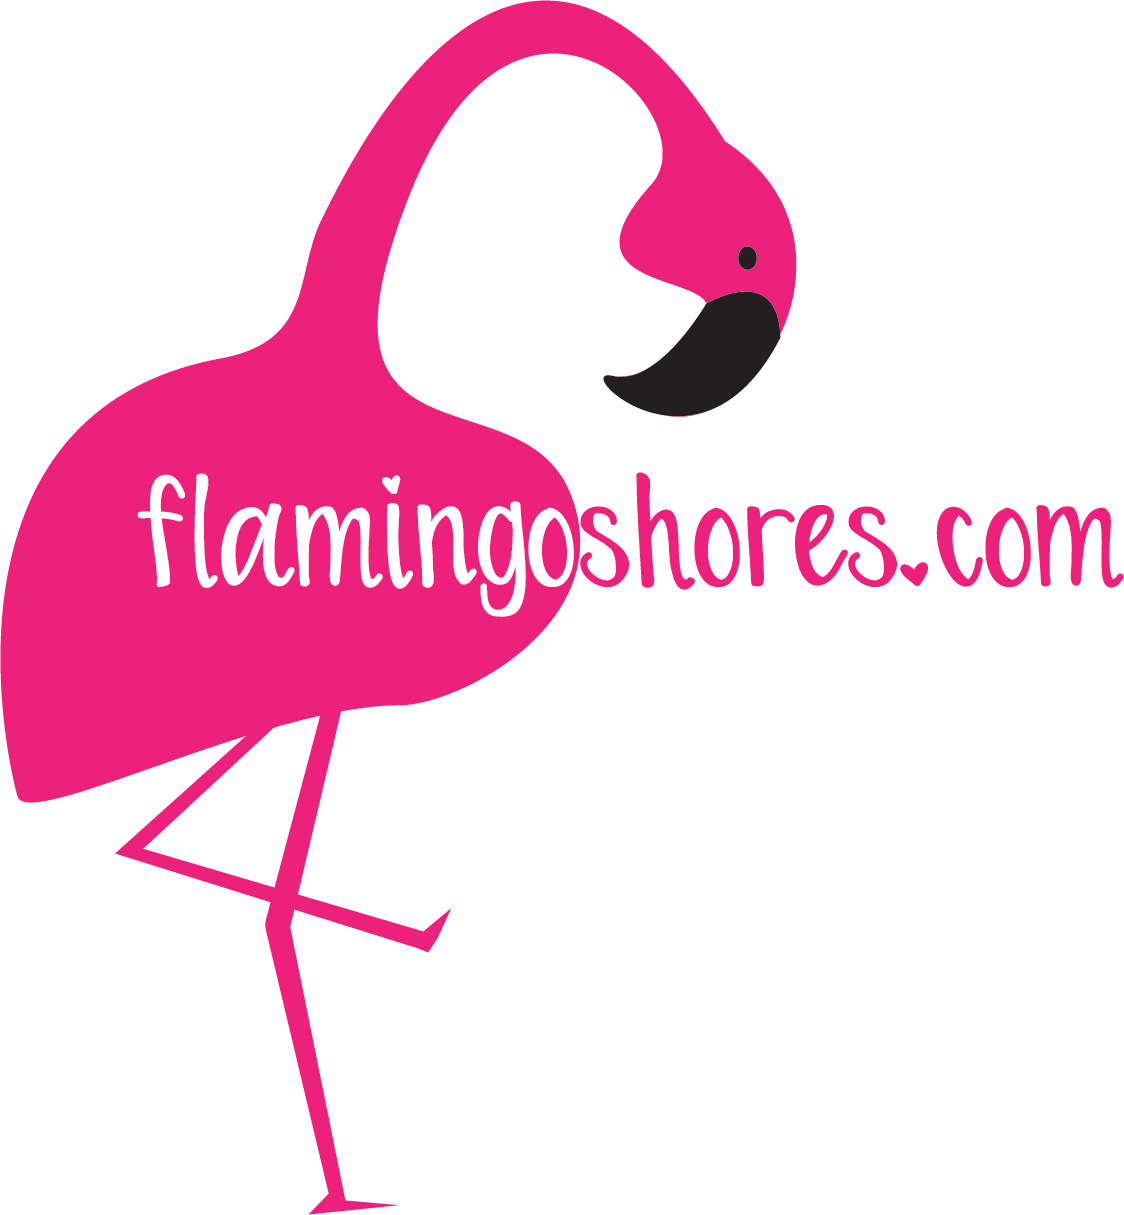 Flamingo Shores - Original Art for Home Decor and Gifts